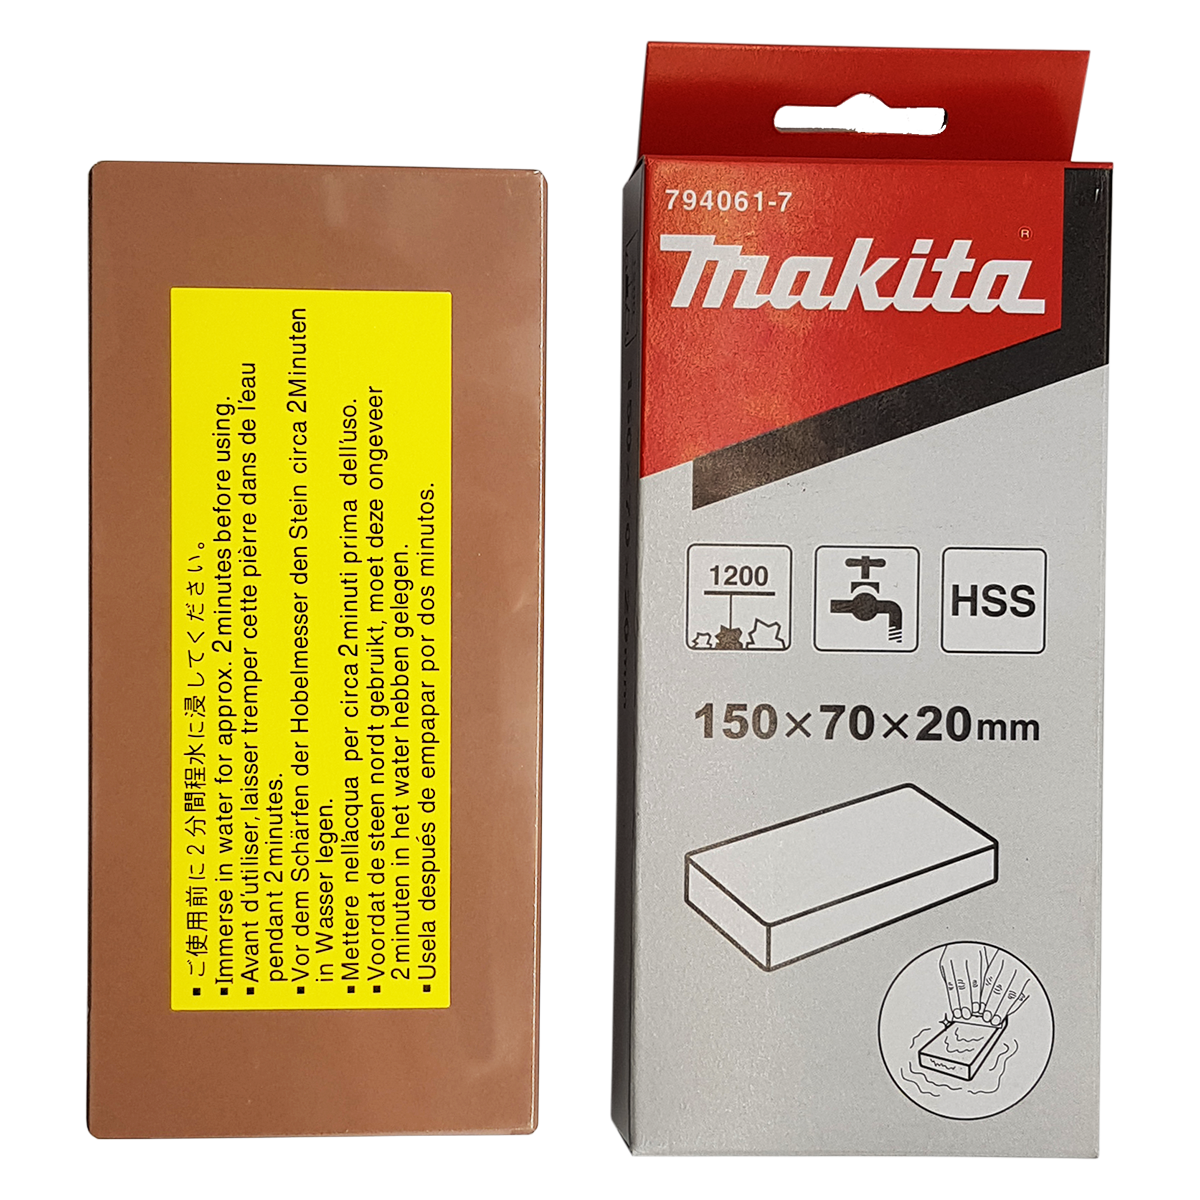 Makita 794061-7 Bıçak Bileme Taşı Japon 1200 Kum